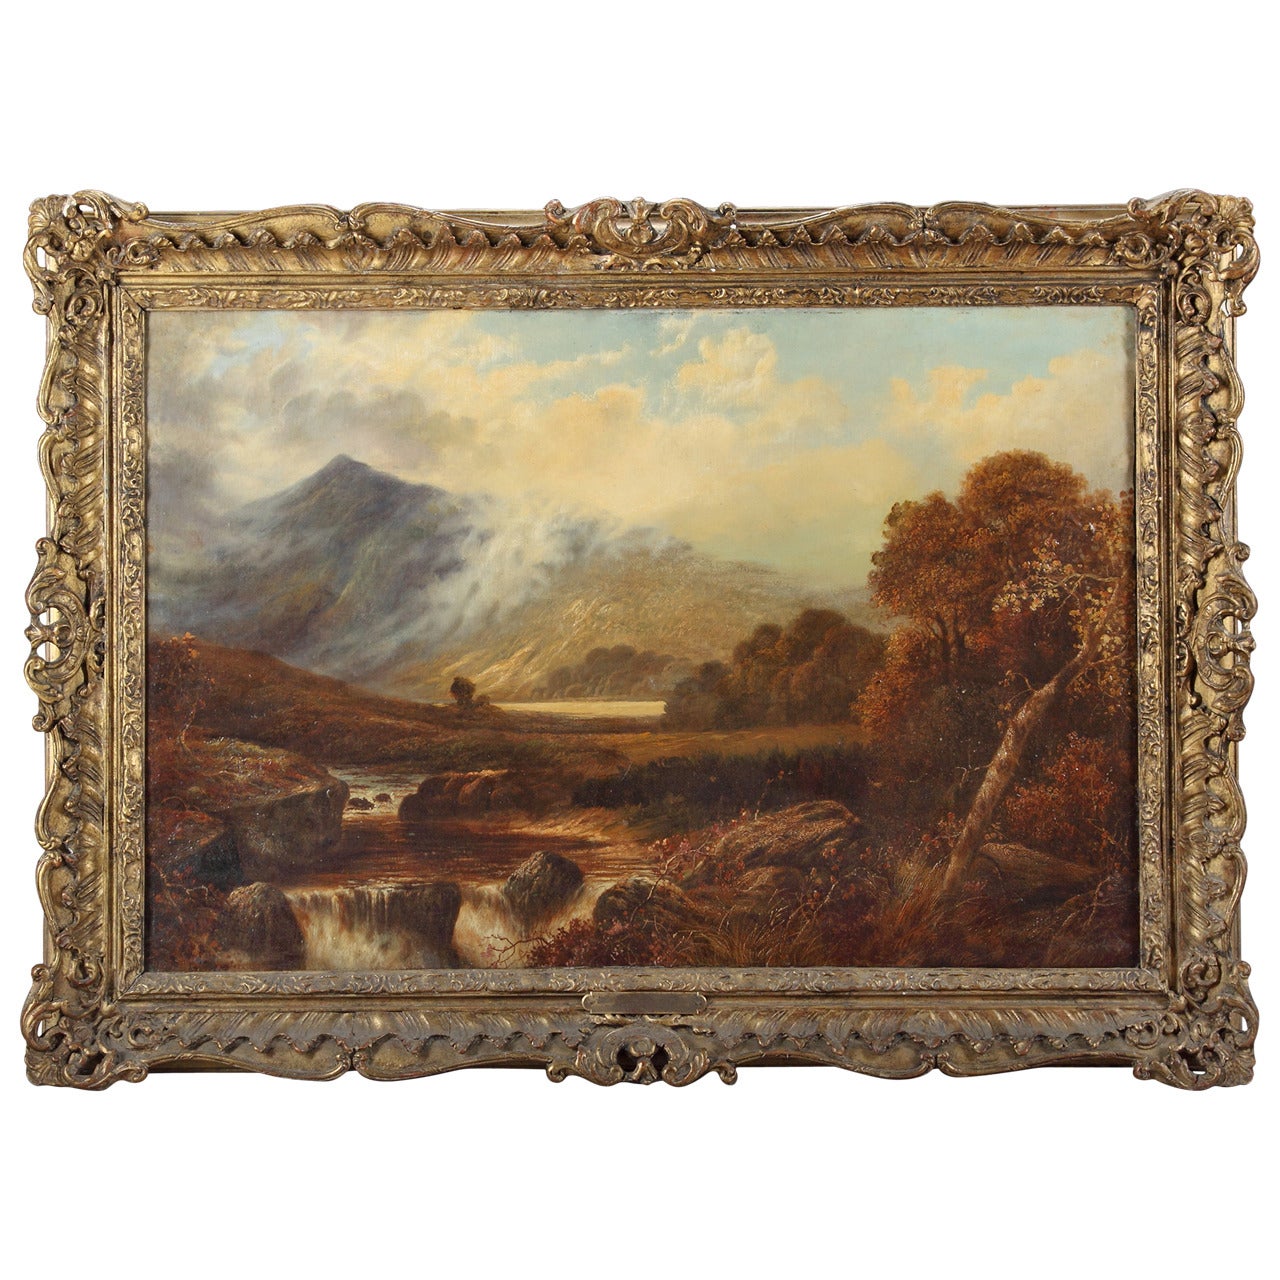 Huile sur toile - Paysage, Cercle de James Stark (1792-1859)